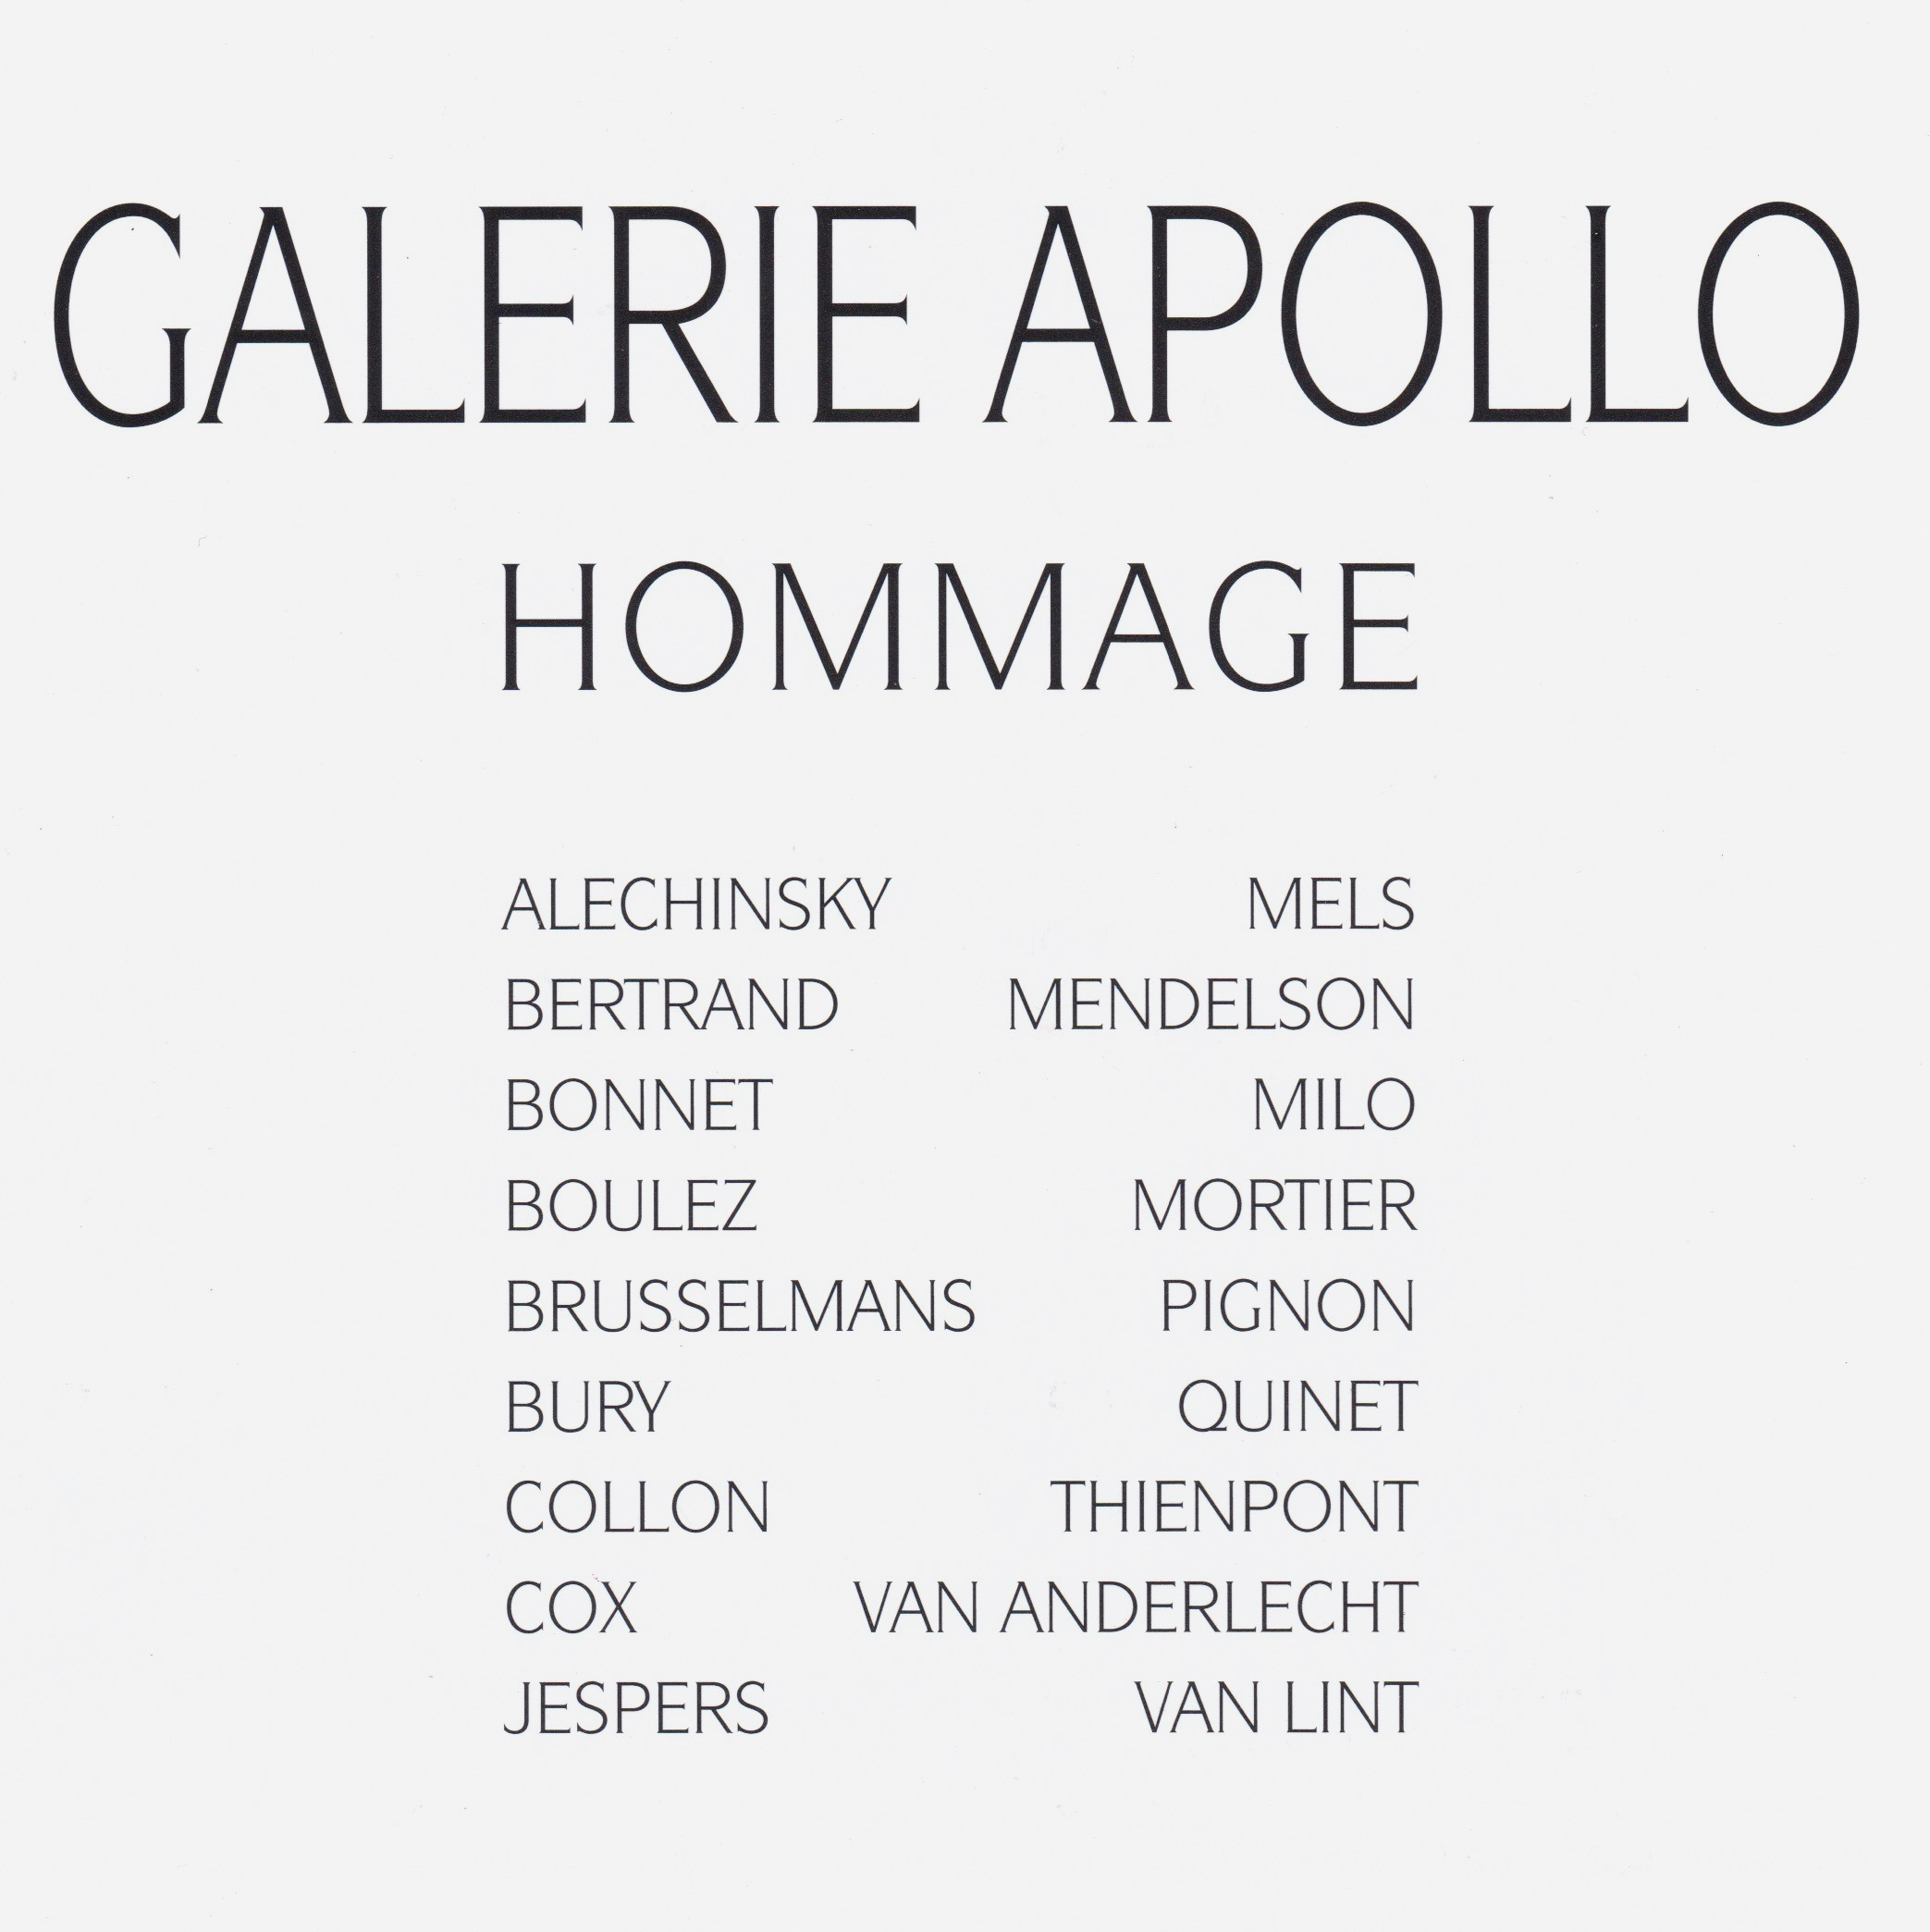 Hommage à la galerie Apollo, Group 2 Gallery, Bruxelles, 2003